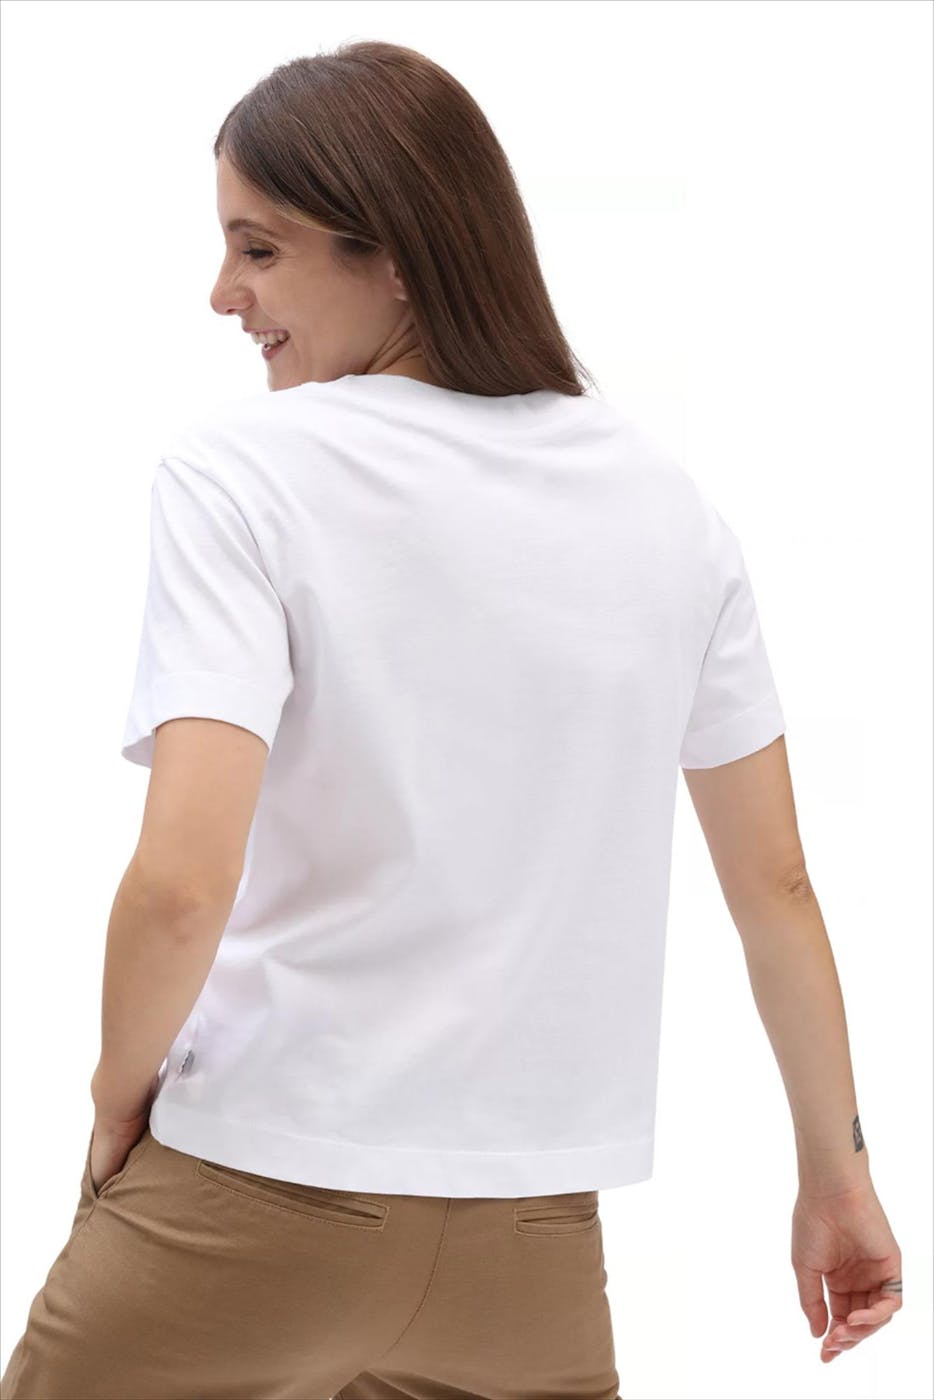 Vans  - Witte Junior V Boxy T-shirt